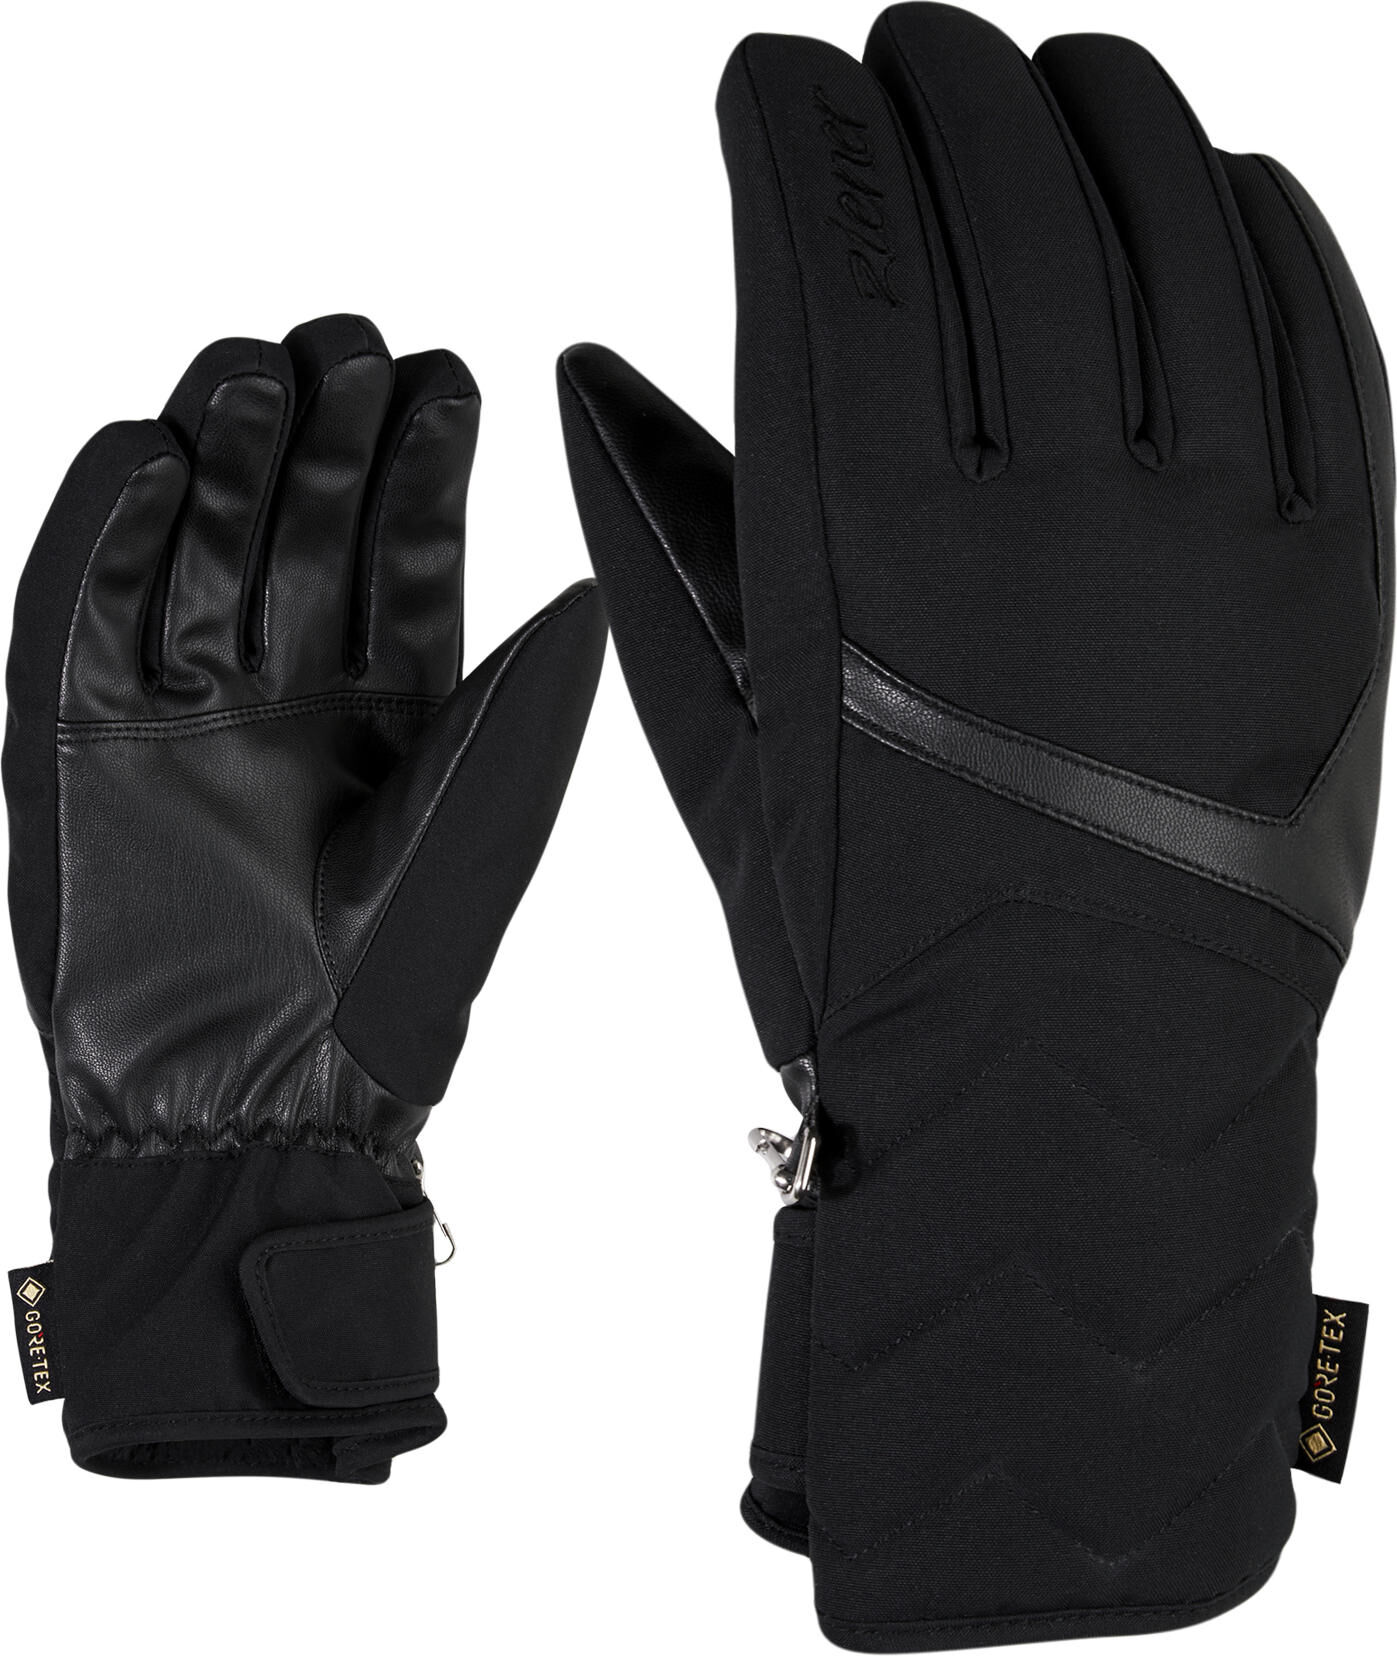 Ziener Kyrena GTX Lady Glove black (12) 7,5